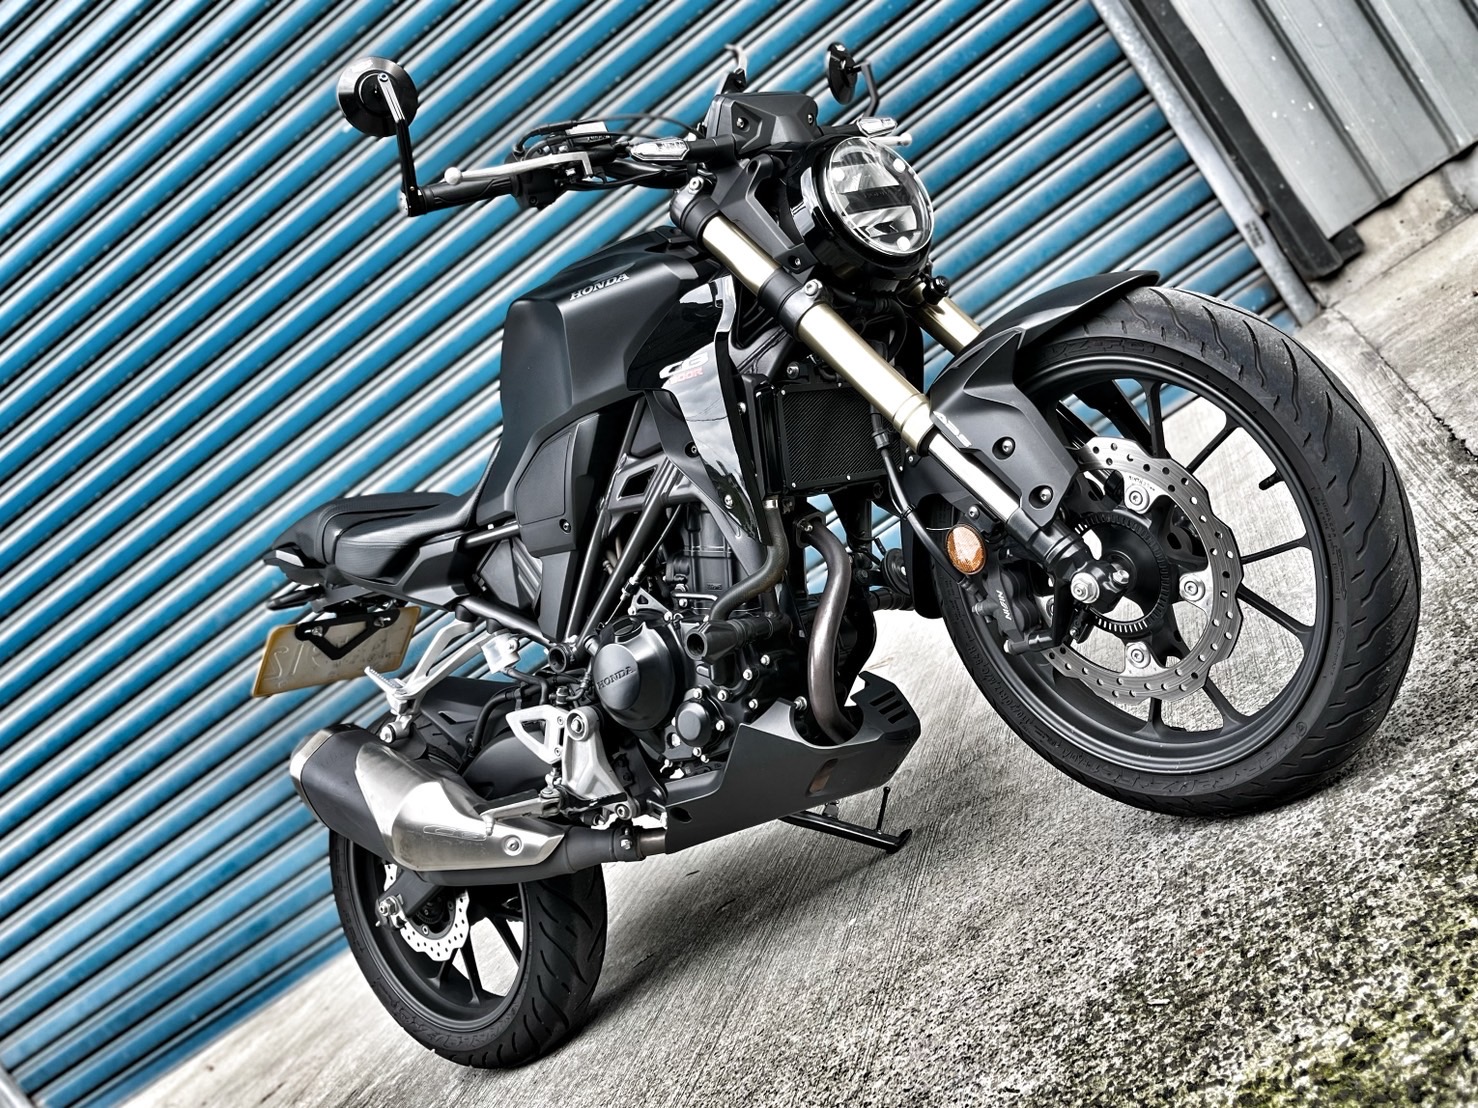 【小資族二手重機買賣】HONDA CB300R - 「Webike-摩托車市」 無倒無摔車 里程保證 小資族二手重機買賣